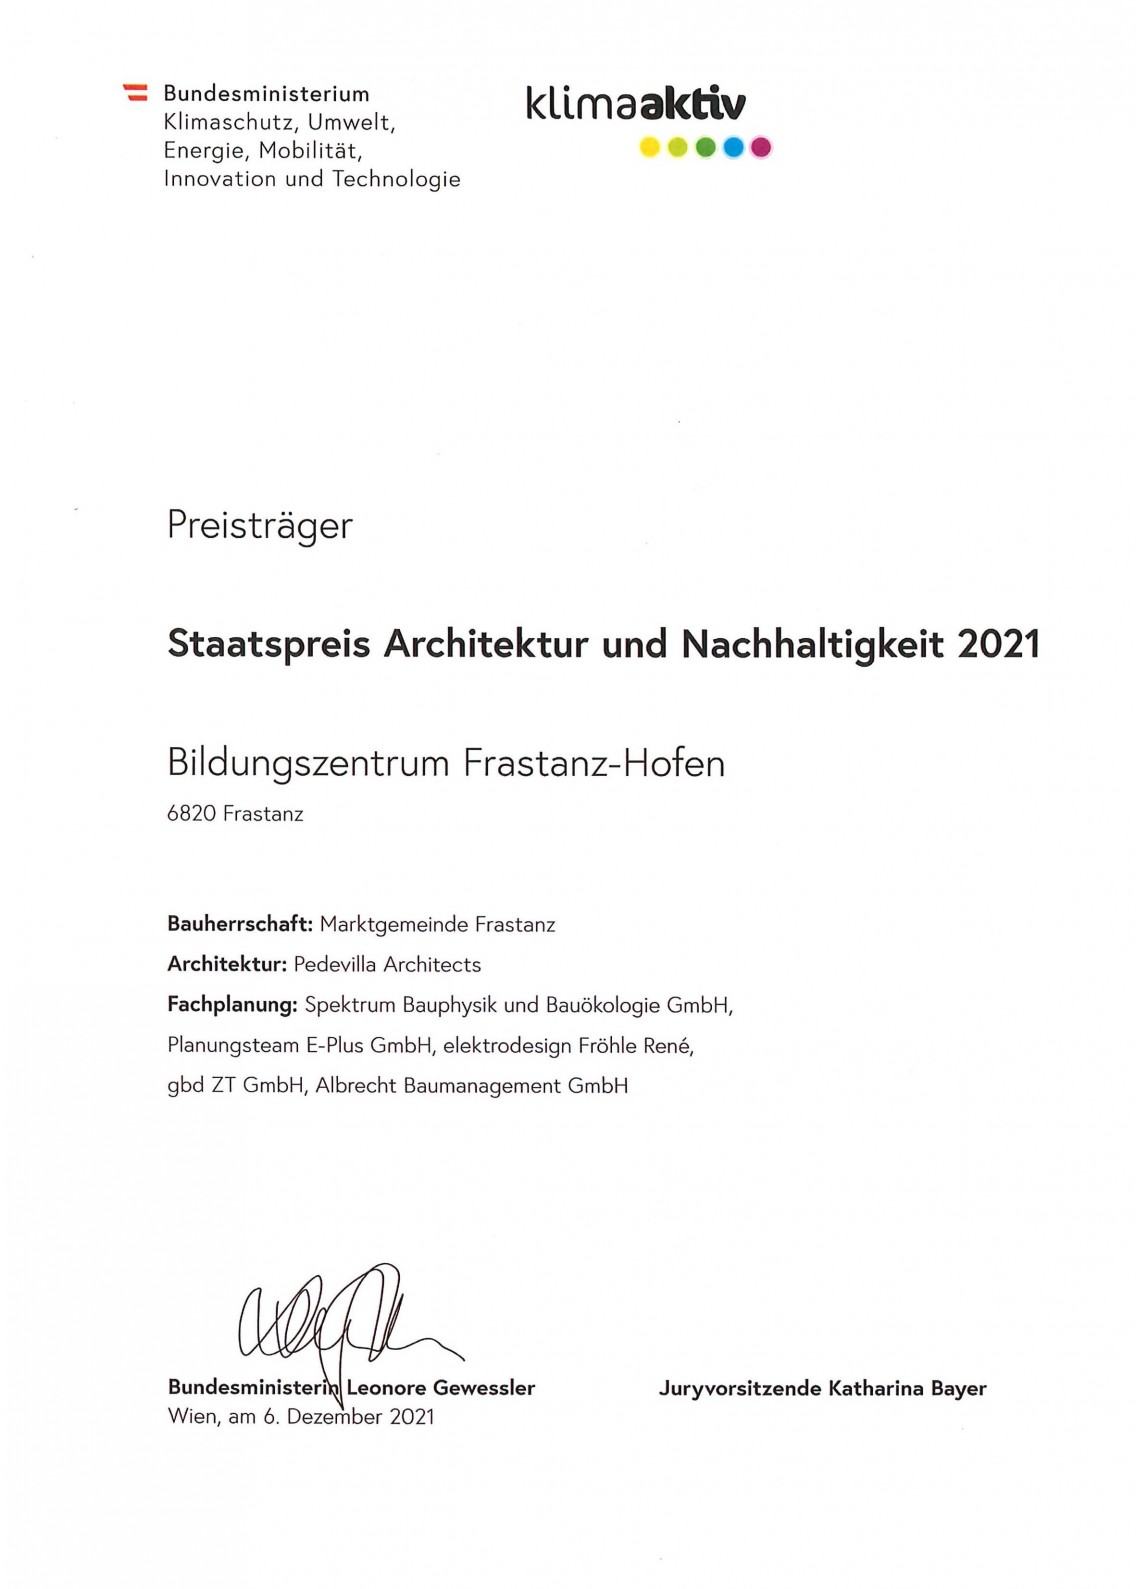 Staatspreis Architektur und Nachhaltigkeit 2021 - Bildungszentrum Frastanz-Hofen